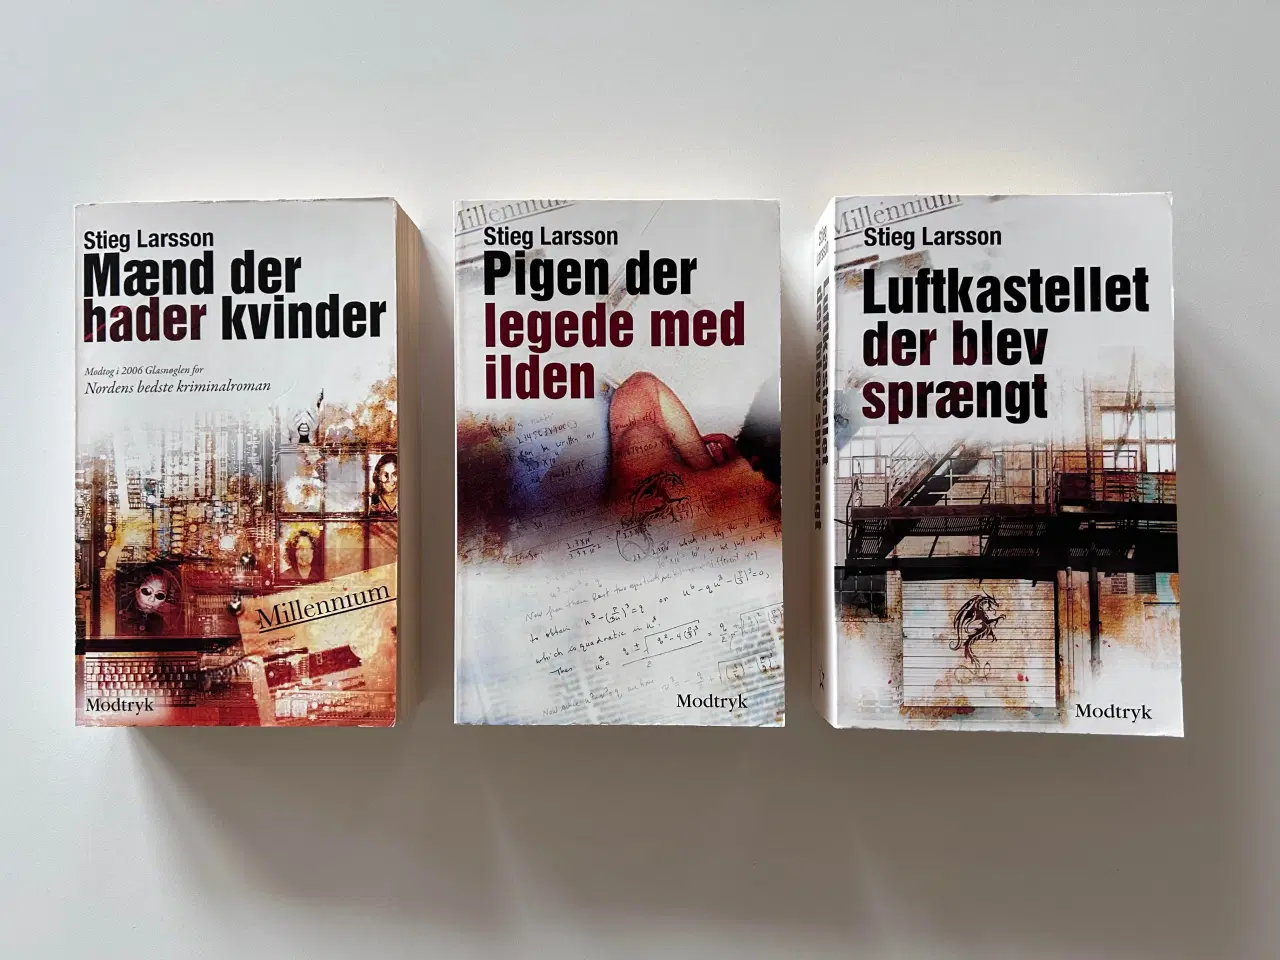 Billede 1 - Stieg Larsson bog, Millennium-trilogien - 3 titler